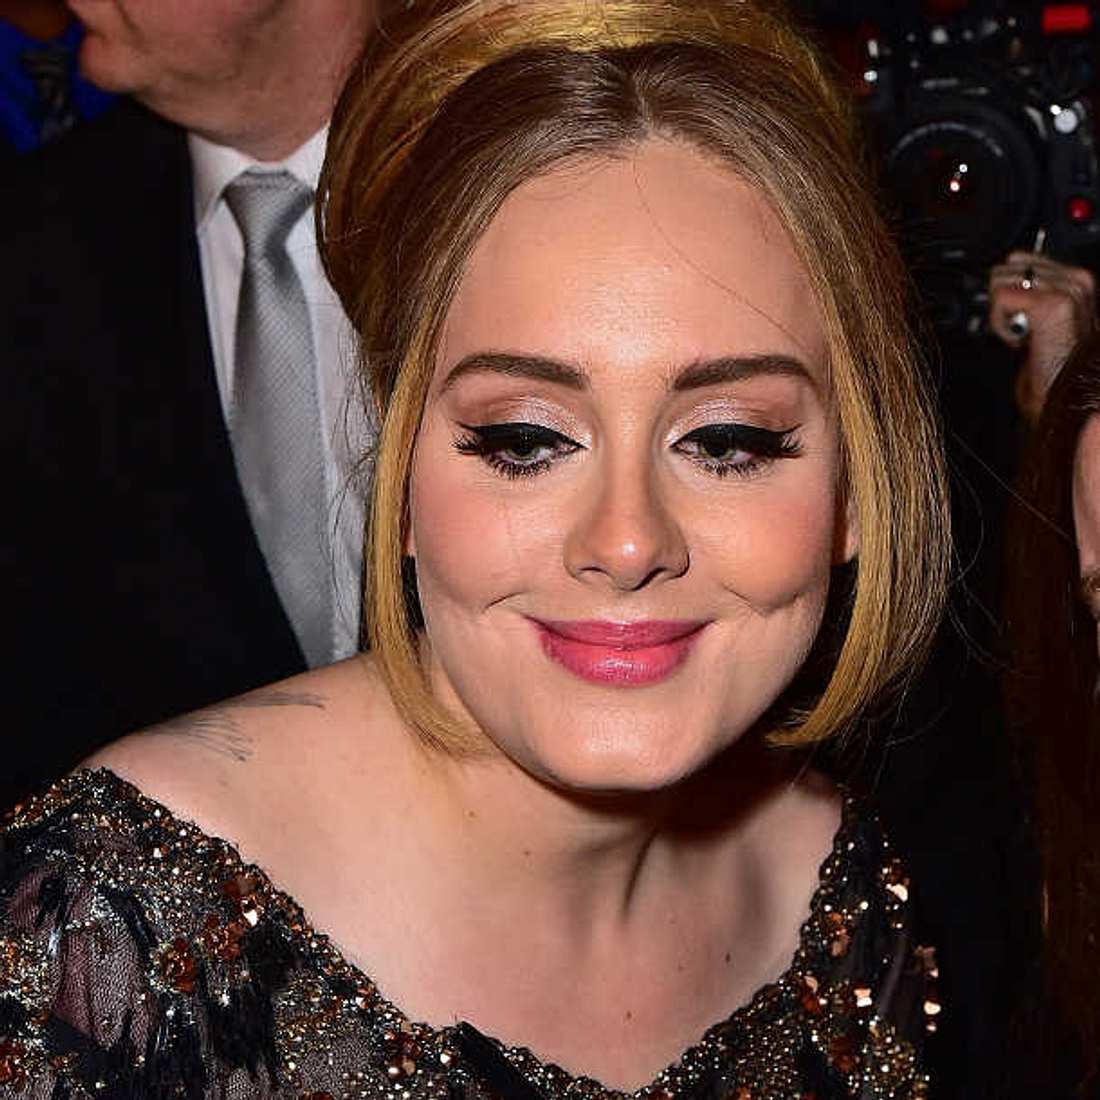 Adele nimmt Figurprobleme auf die leichte Schulter!